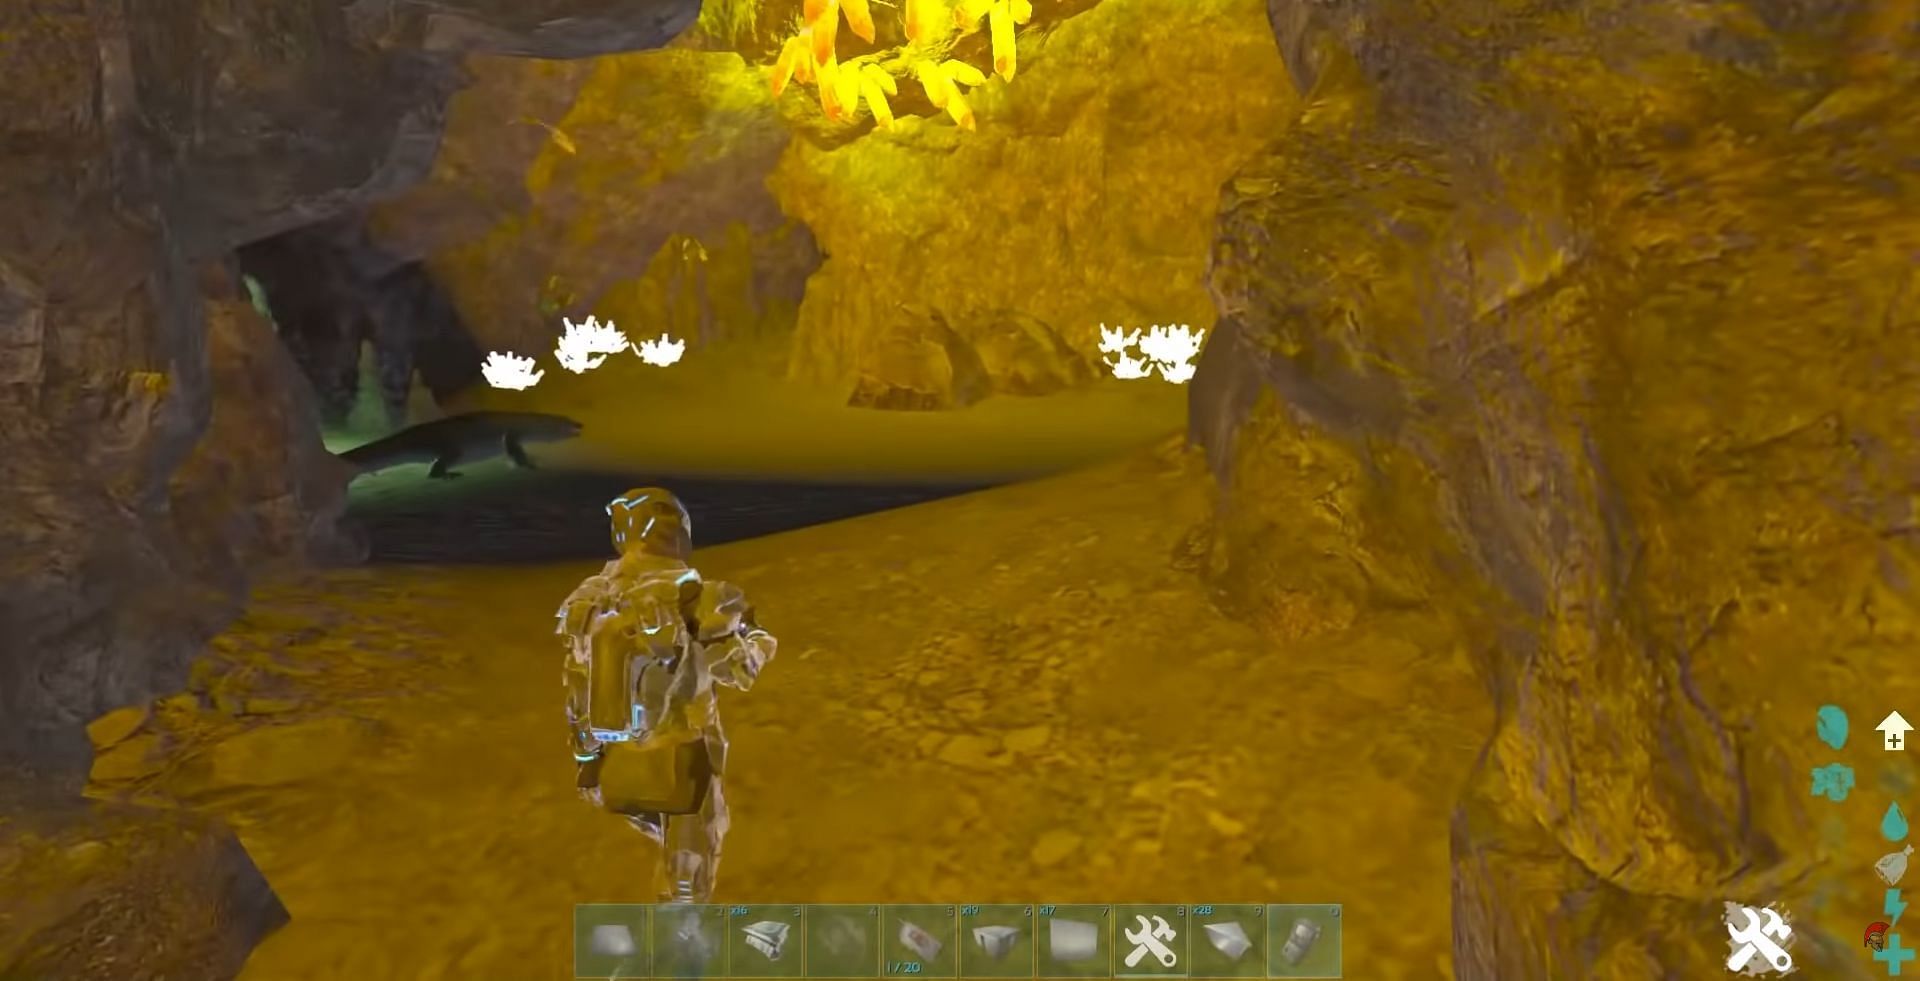 3 Room Cave (Image via SEAASER on YouTube)